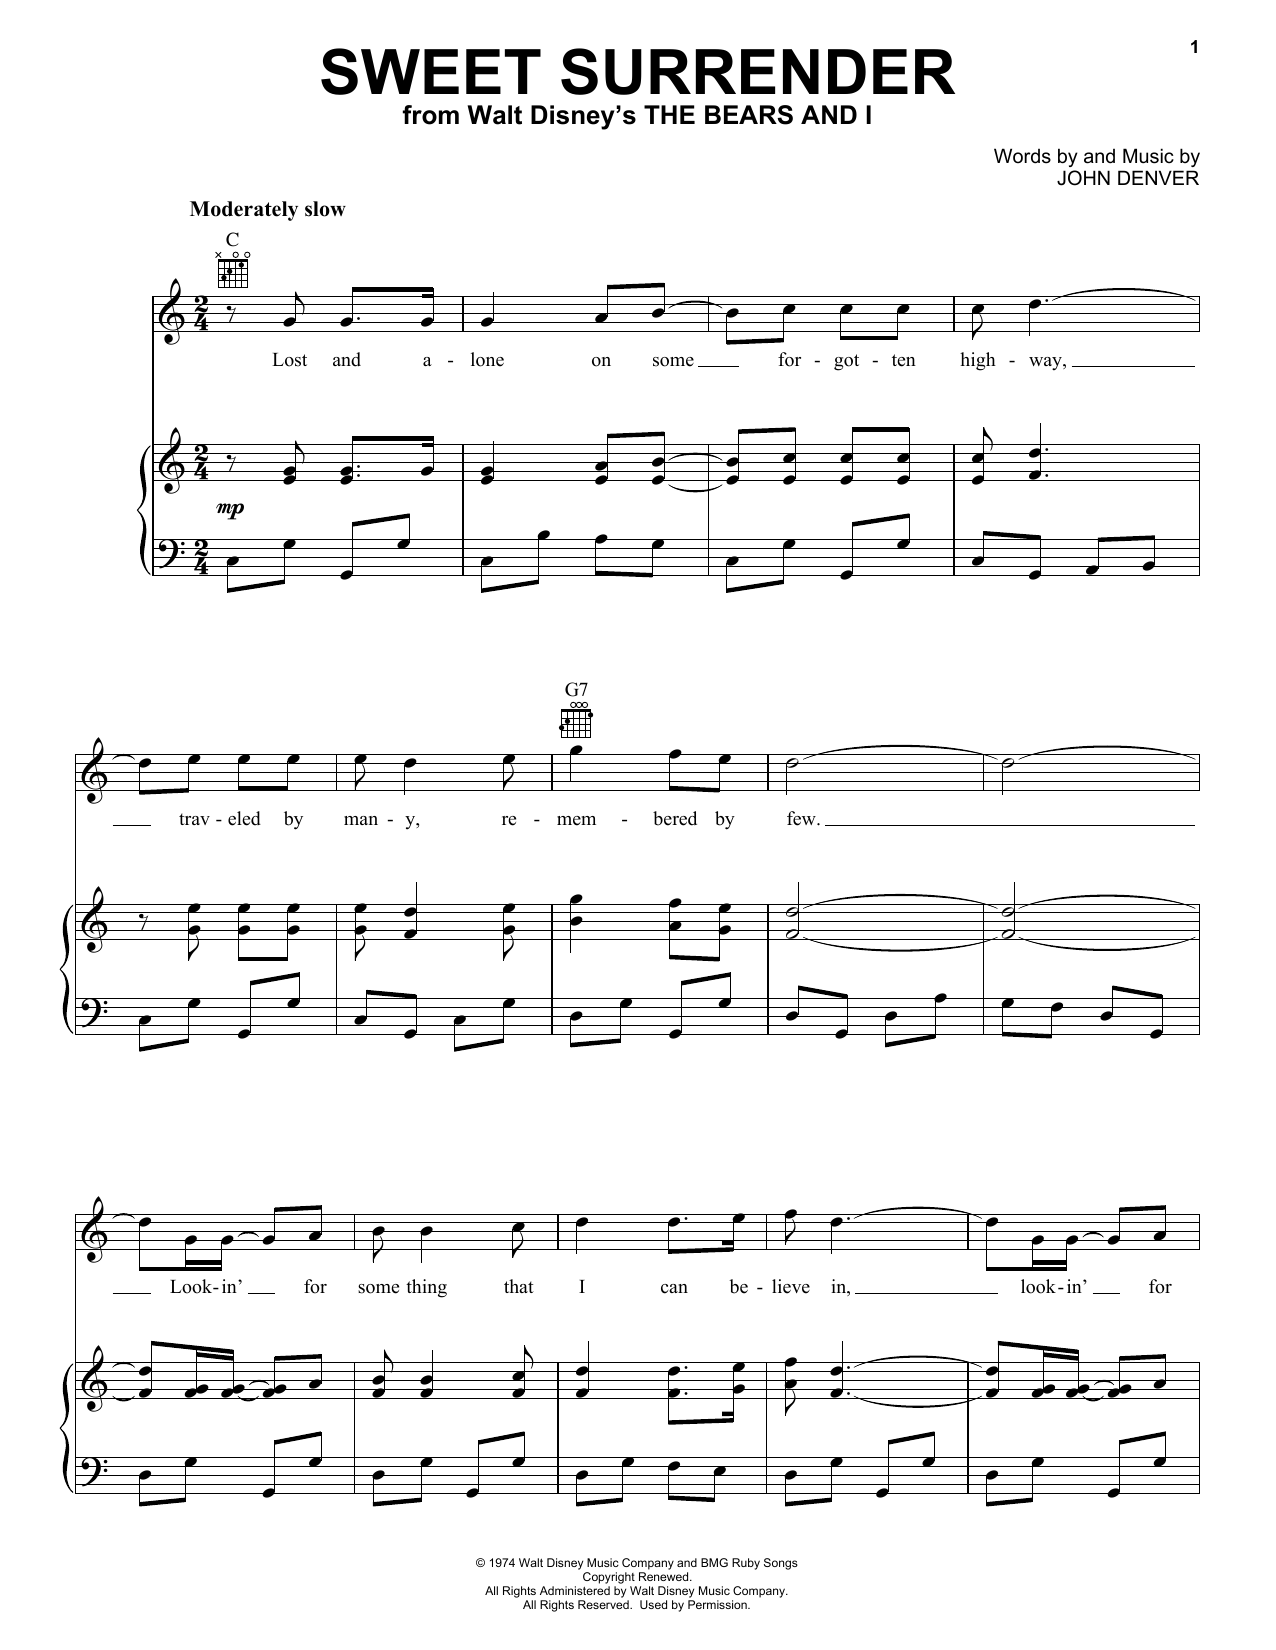 John Denver Sweet Surrender Sheet Music Notes & Chords for Violin - Download or Print PDF